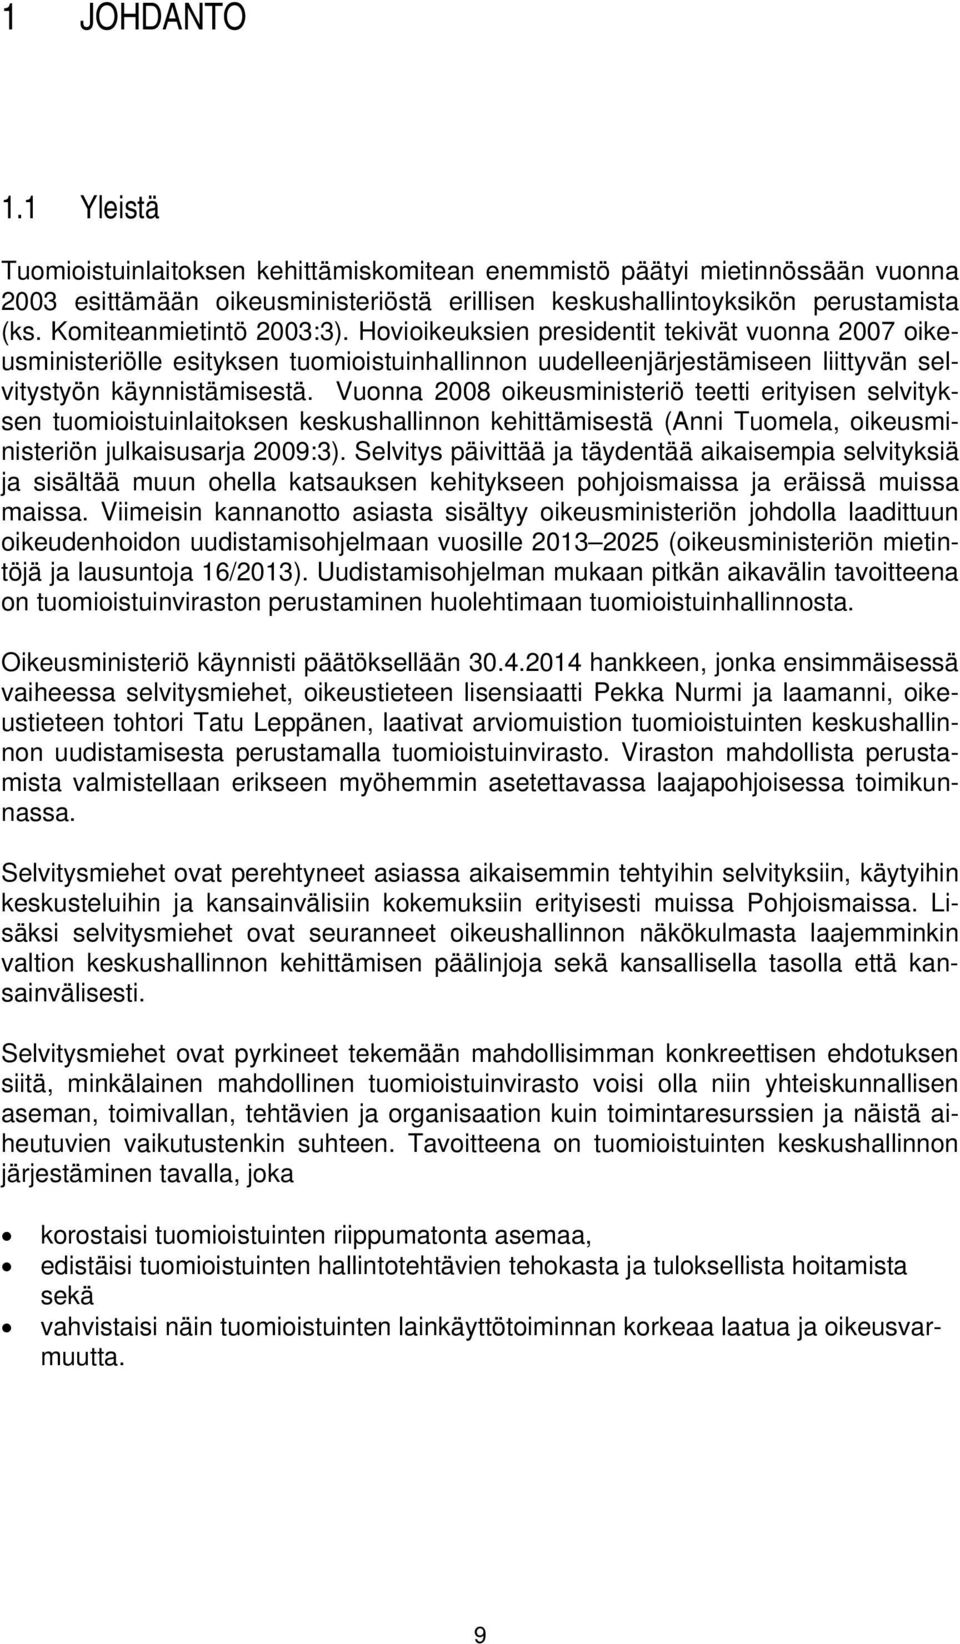 Vuonna 2008 oikeusministeriö teetti erityisen selvityksen tuomioistuinlaitoksen keskushallinnon kehittämisestä (Anni Tuomela, oikeusministeriön julkaisusarja 2009:3).